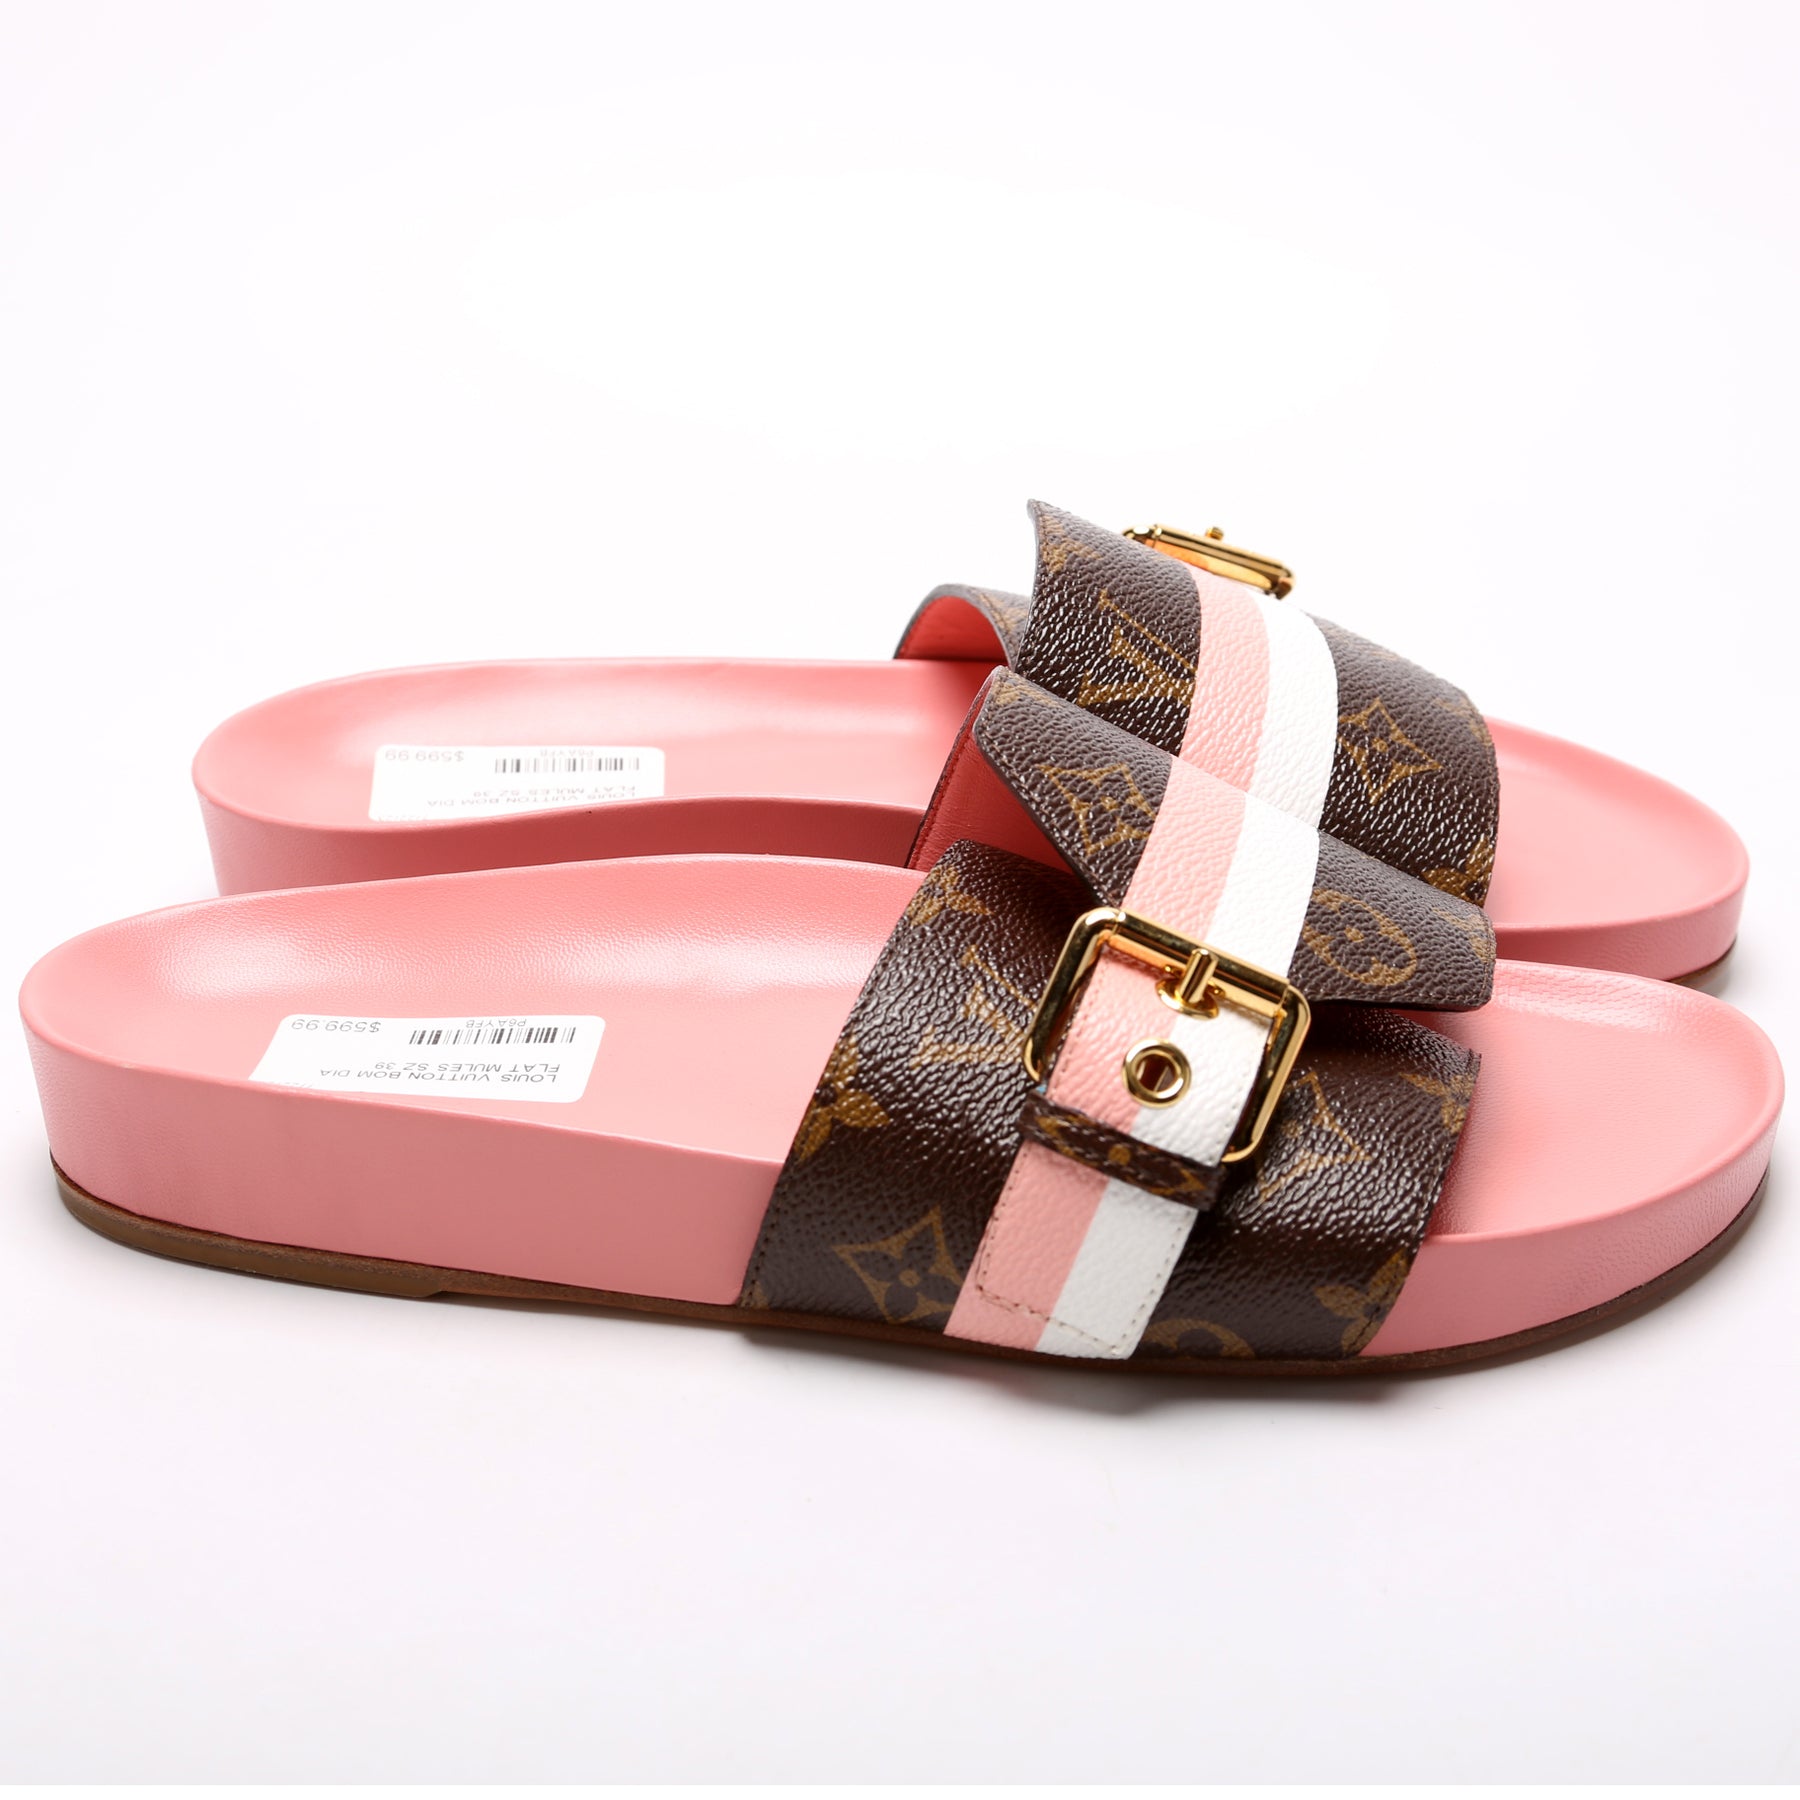 Louis Vuitton, Shoes, Louis Vuitton Sunbath Mule Slides Size 39